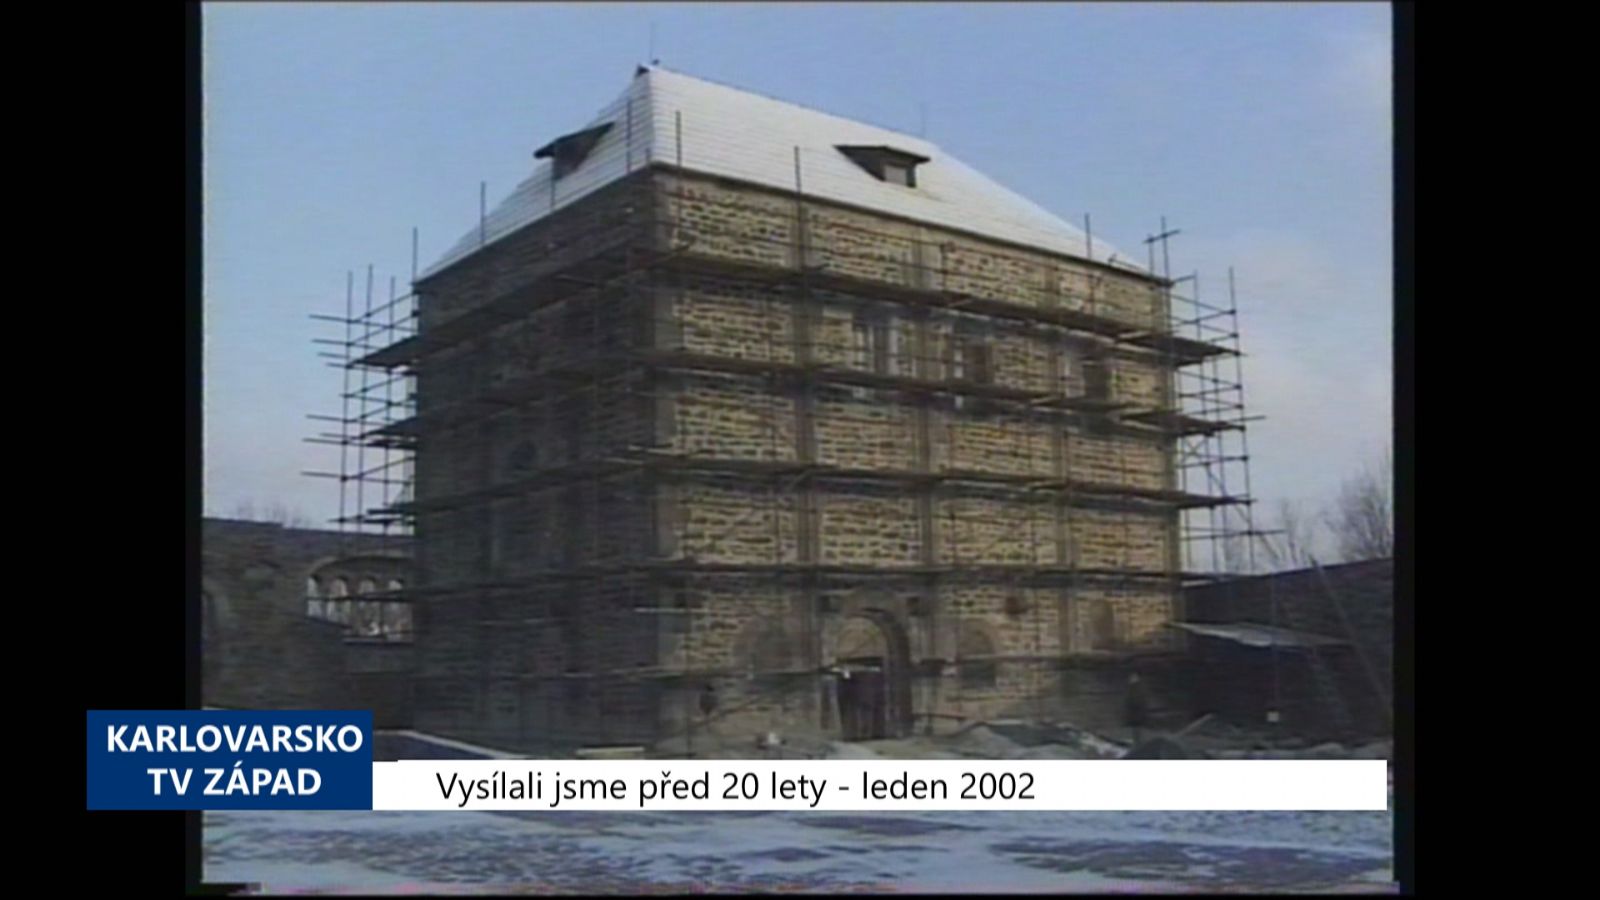 2002 – Cheb: Hradní kaple prochází rekonstrukcí (TV Západ)